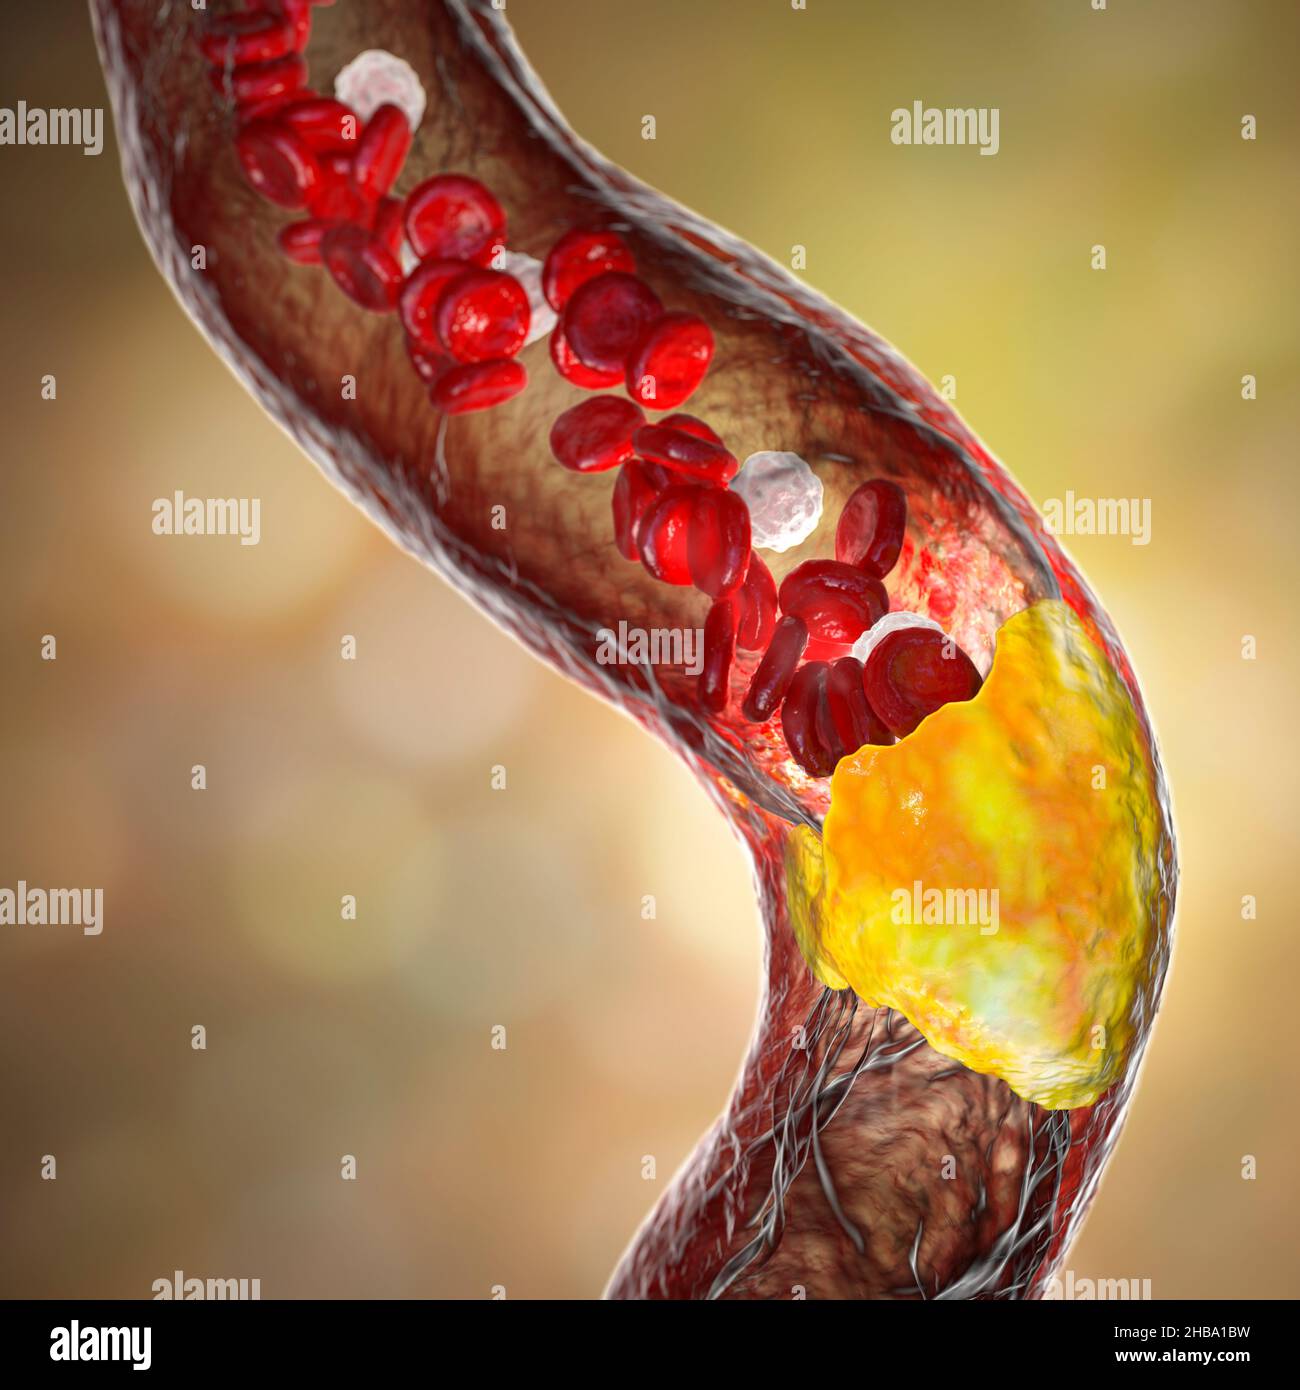 Aterosclerosi. Illustrazione che mostra una placca grassa (ateroma, giallo) sulla parete interna di un'arteria. Questa condizione, nota come aterosclerosi, è la causa più comune di restringimento arterioso. Foto Stock